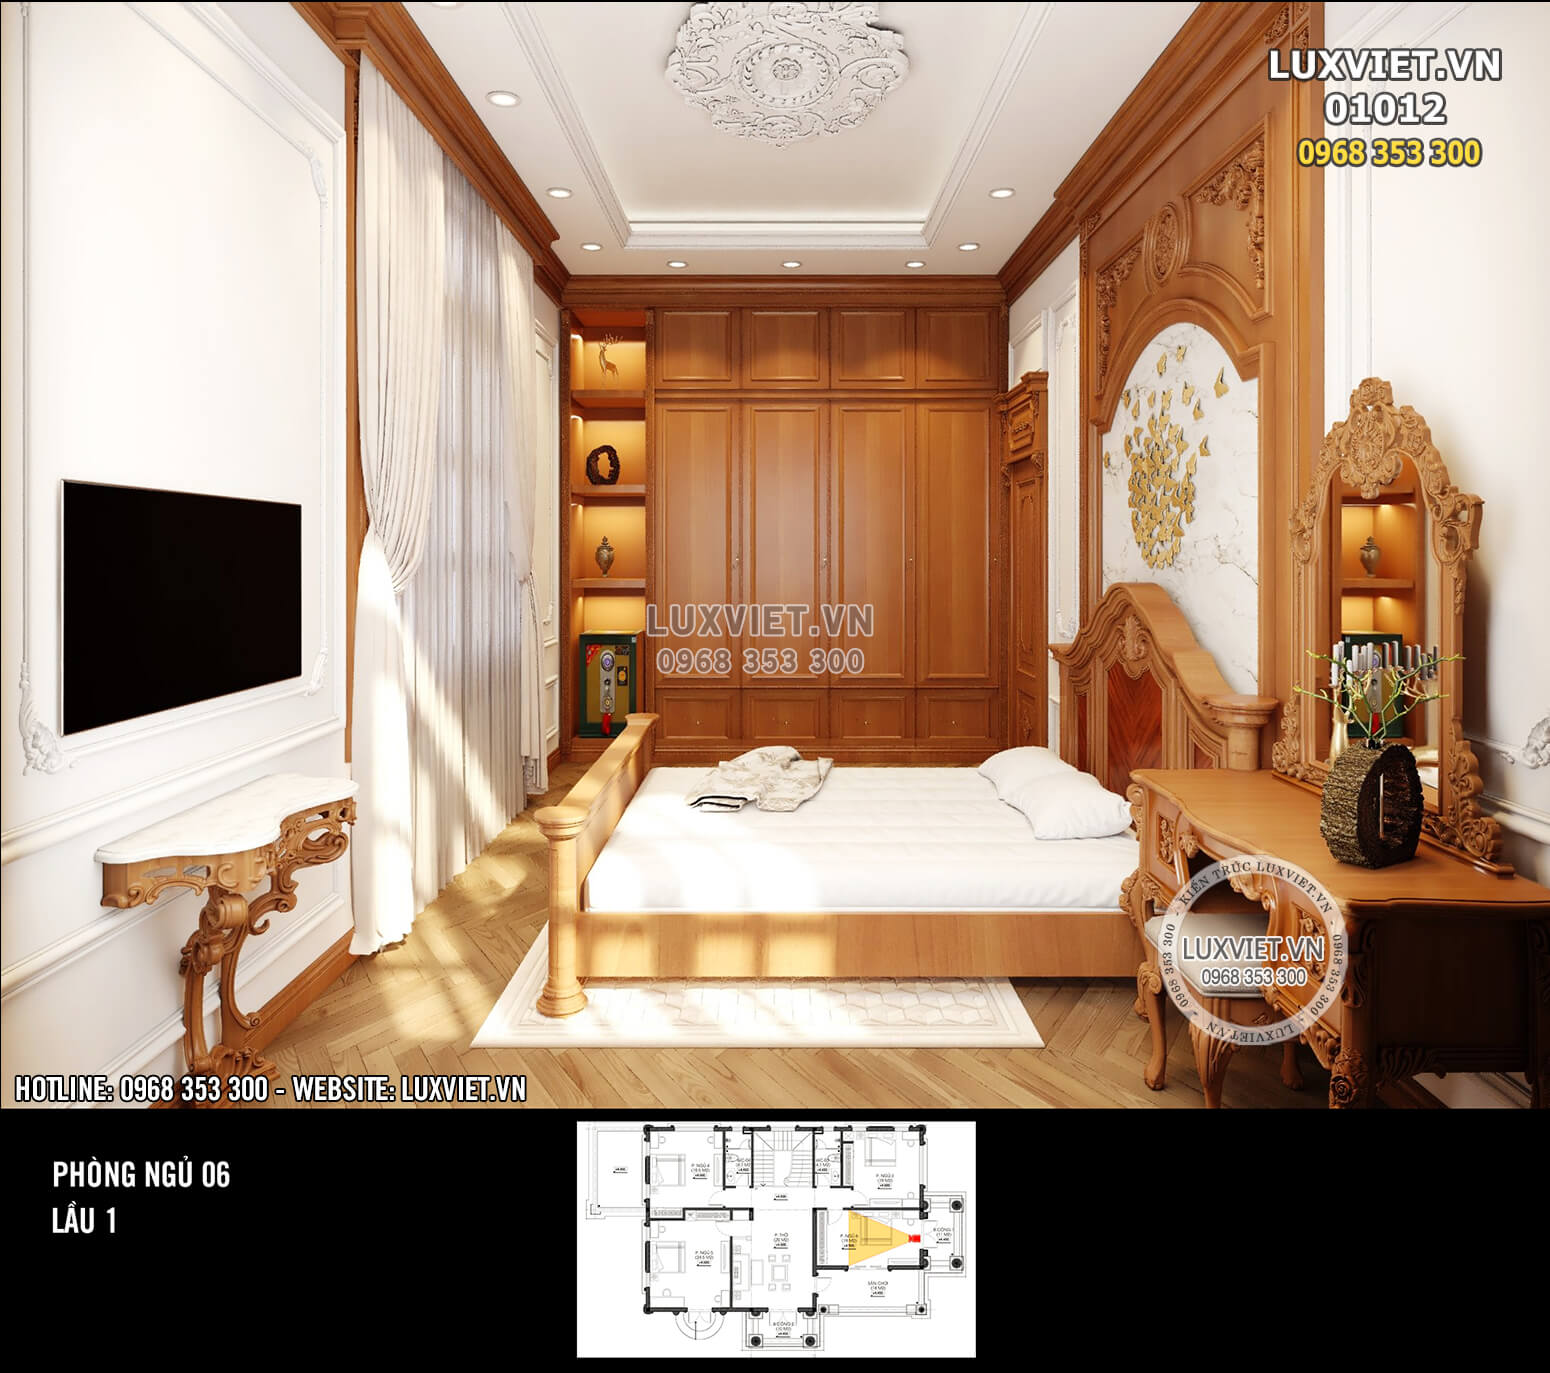 Hình ảnh: Thiết kế nội thất ốp gỗ tân cổ điển cho phòng ngủ 6